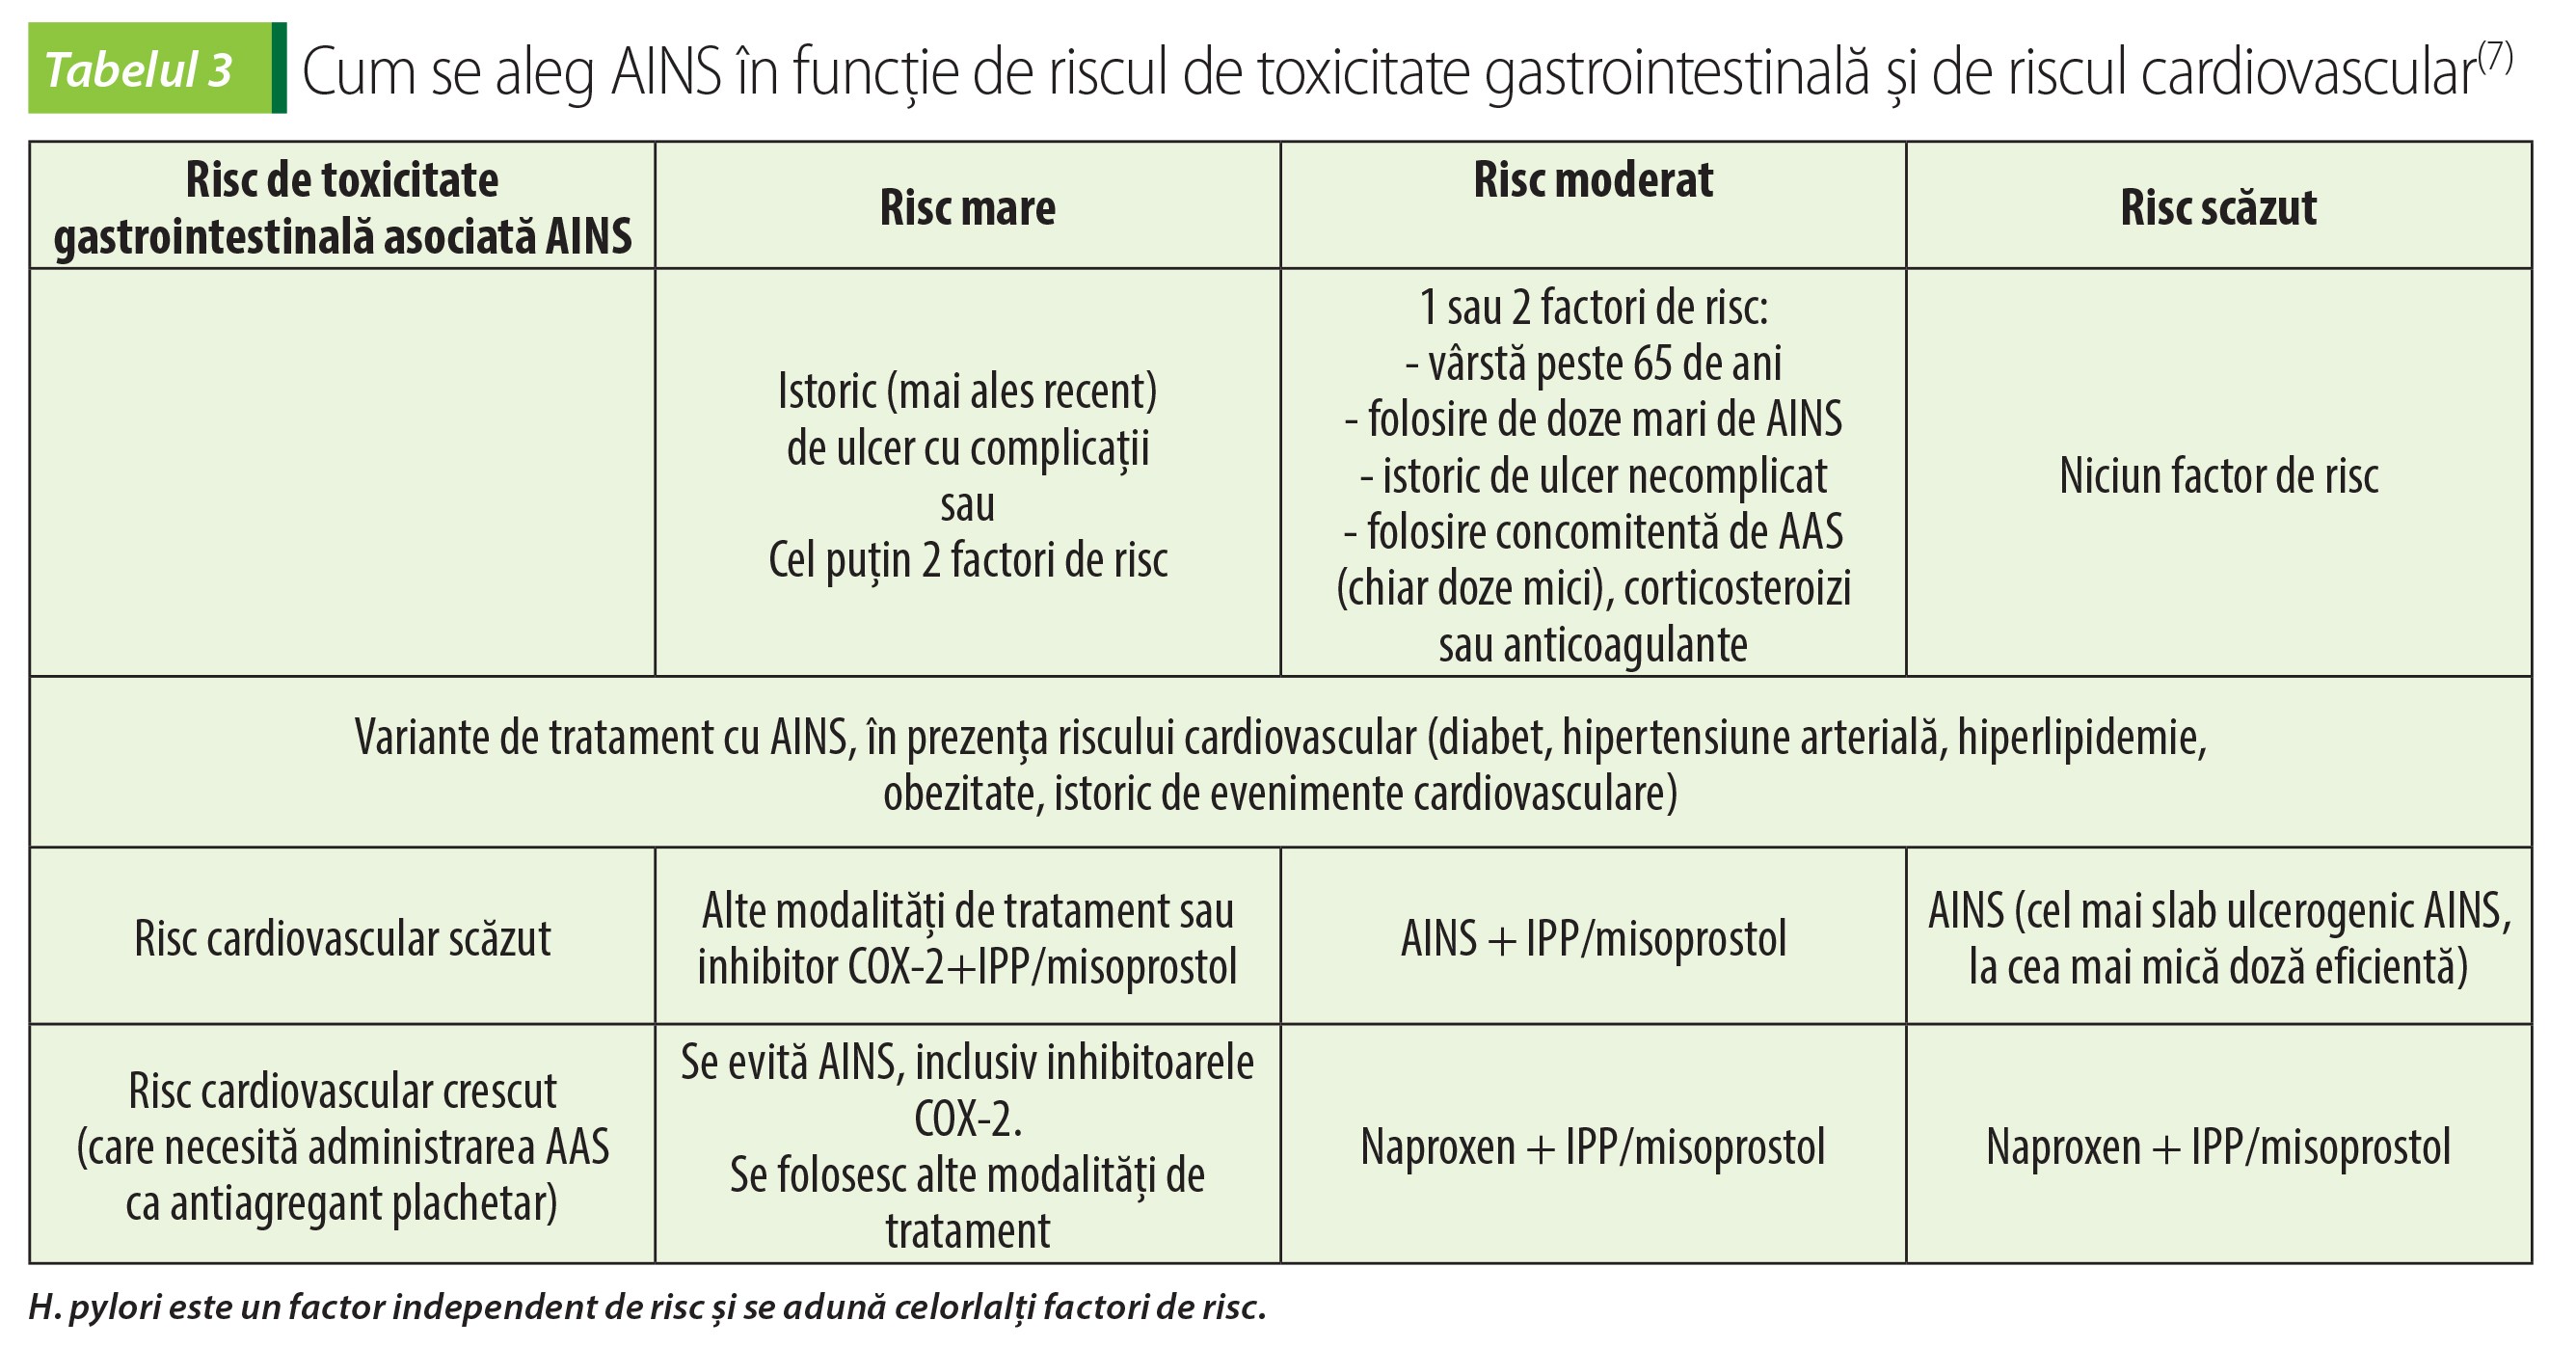 Tabelul 3 Cum se aleg AINS în funcție de riscul de toxicitate gastrointestinală și de riscul cardiovascular(7)